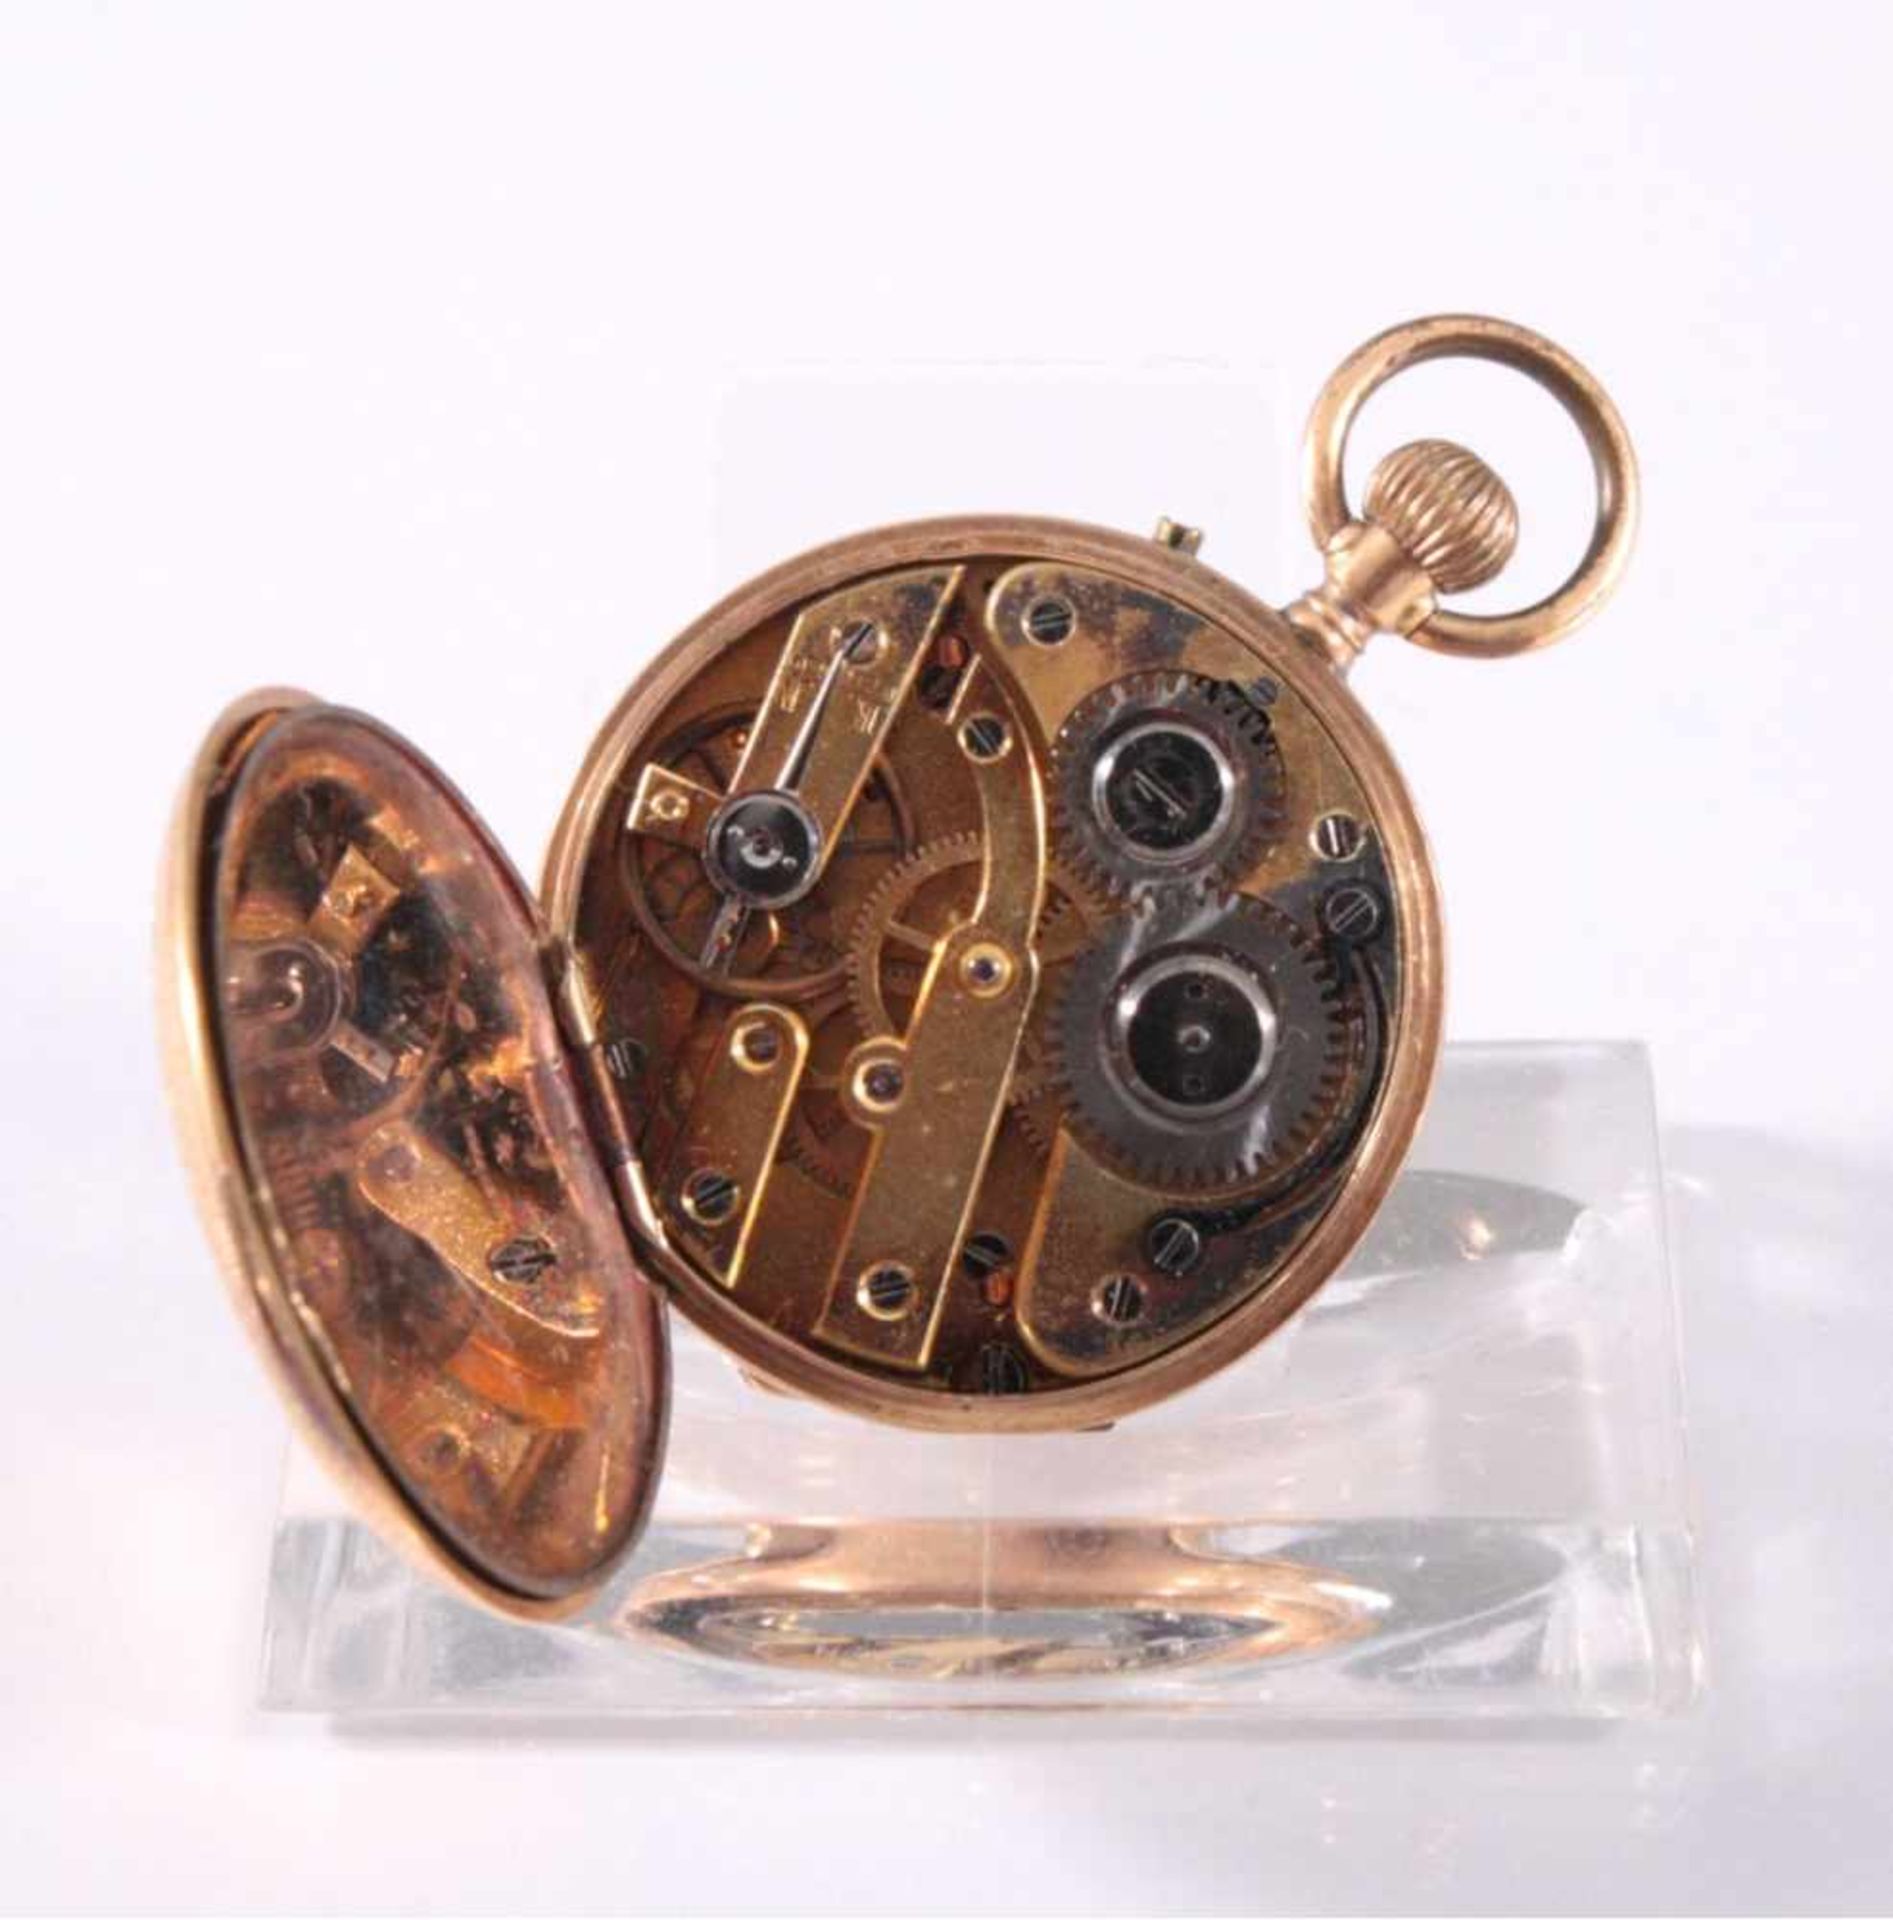 Offene Damentaschenuhr um 1900, 585/00 GGReich gravierter Uhrendeckel, innen nummeriert 30400/4, - Bild 3 aus 3